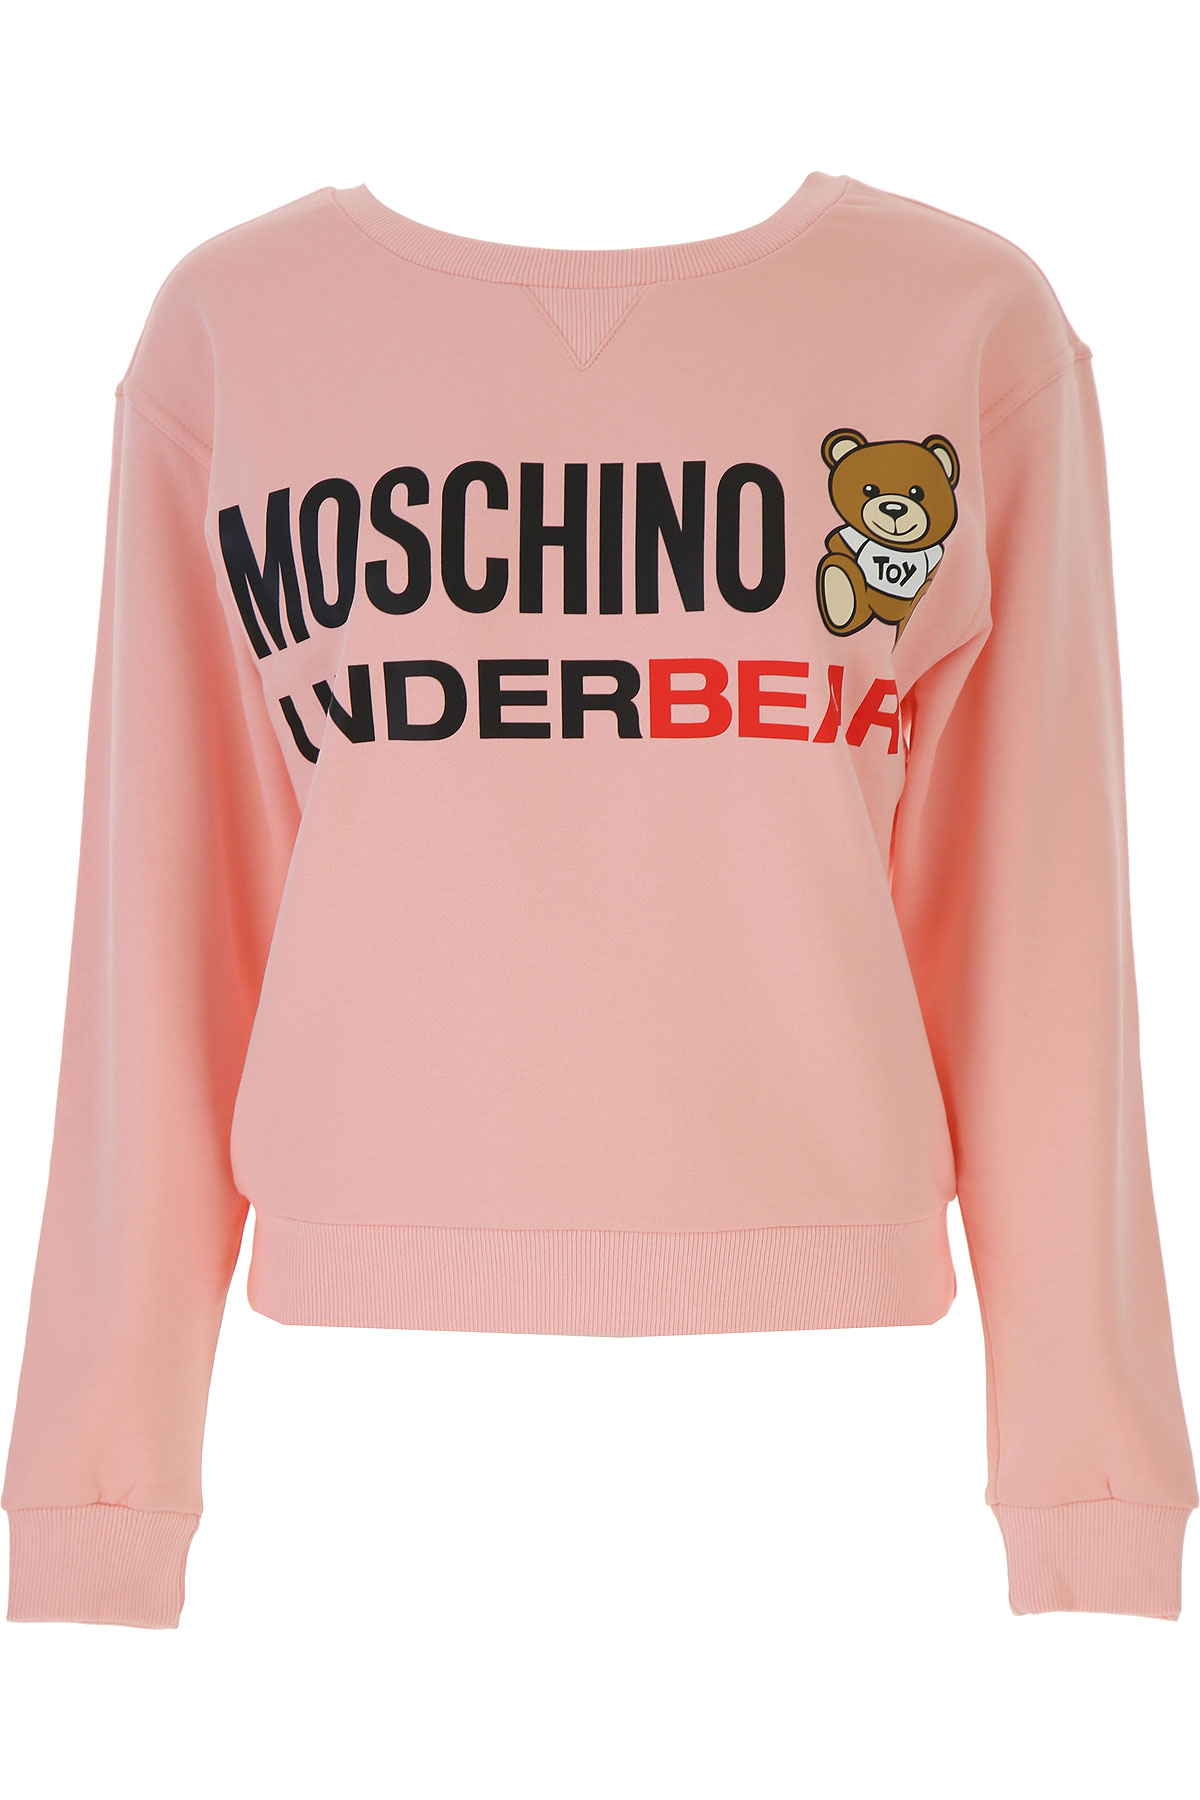 Moschino Sweatshirt für Damen, Kapuzenpulli, Hoodie, Sweats Günstig im Sale, Pink, Baumwolle, 2017, 38 M